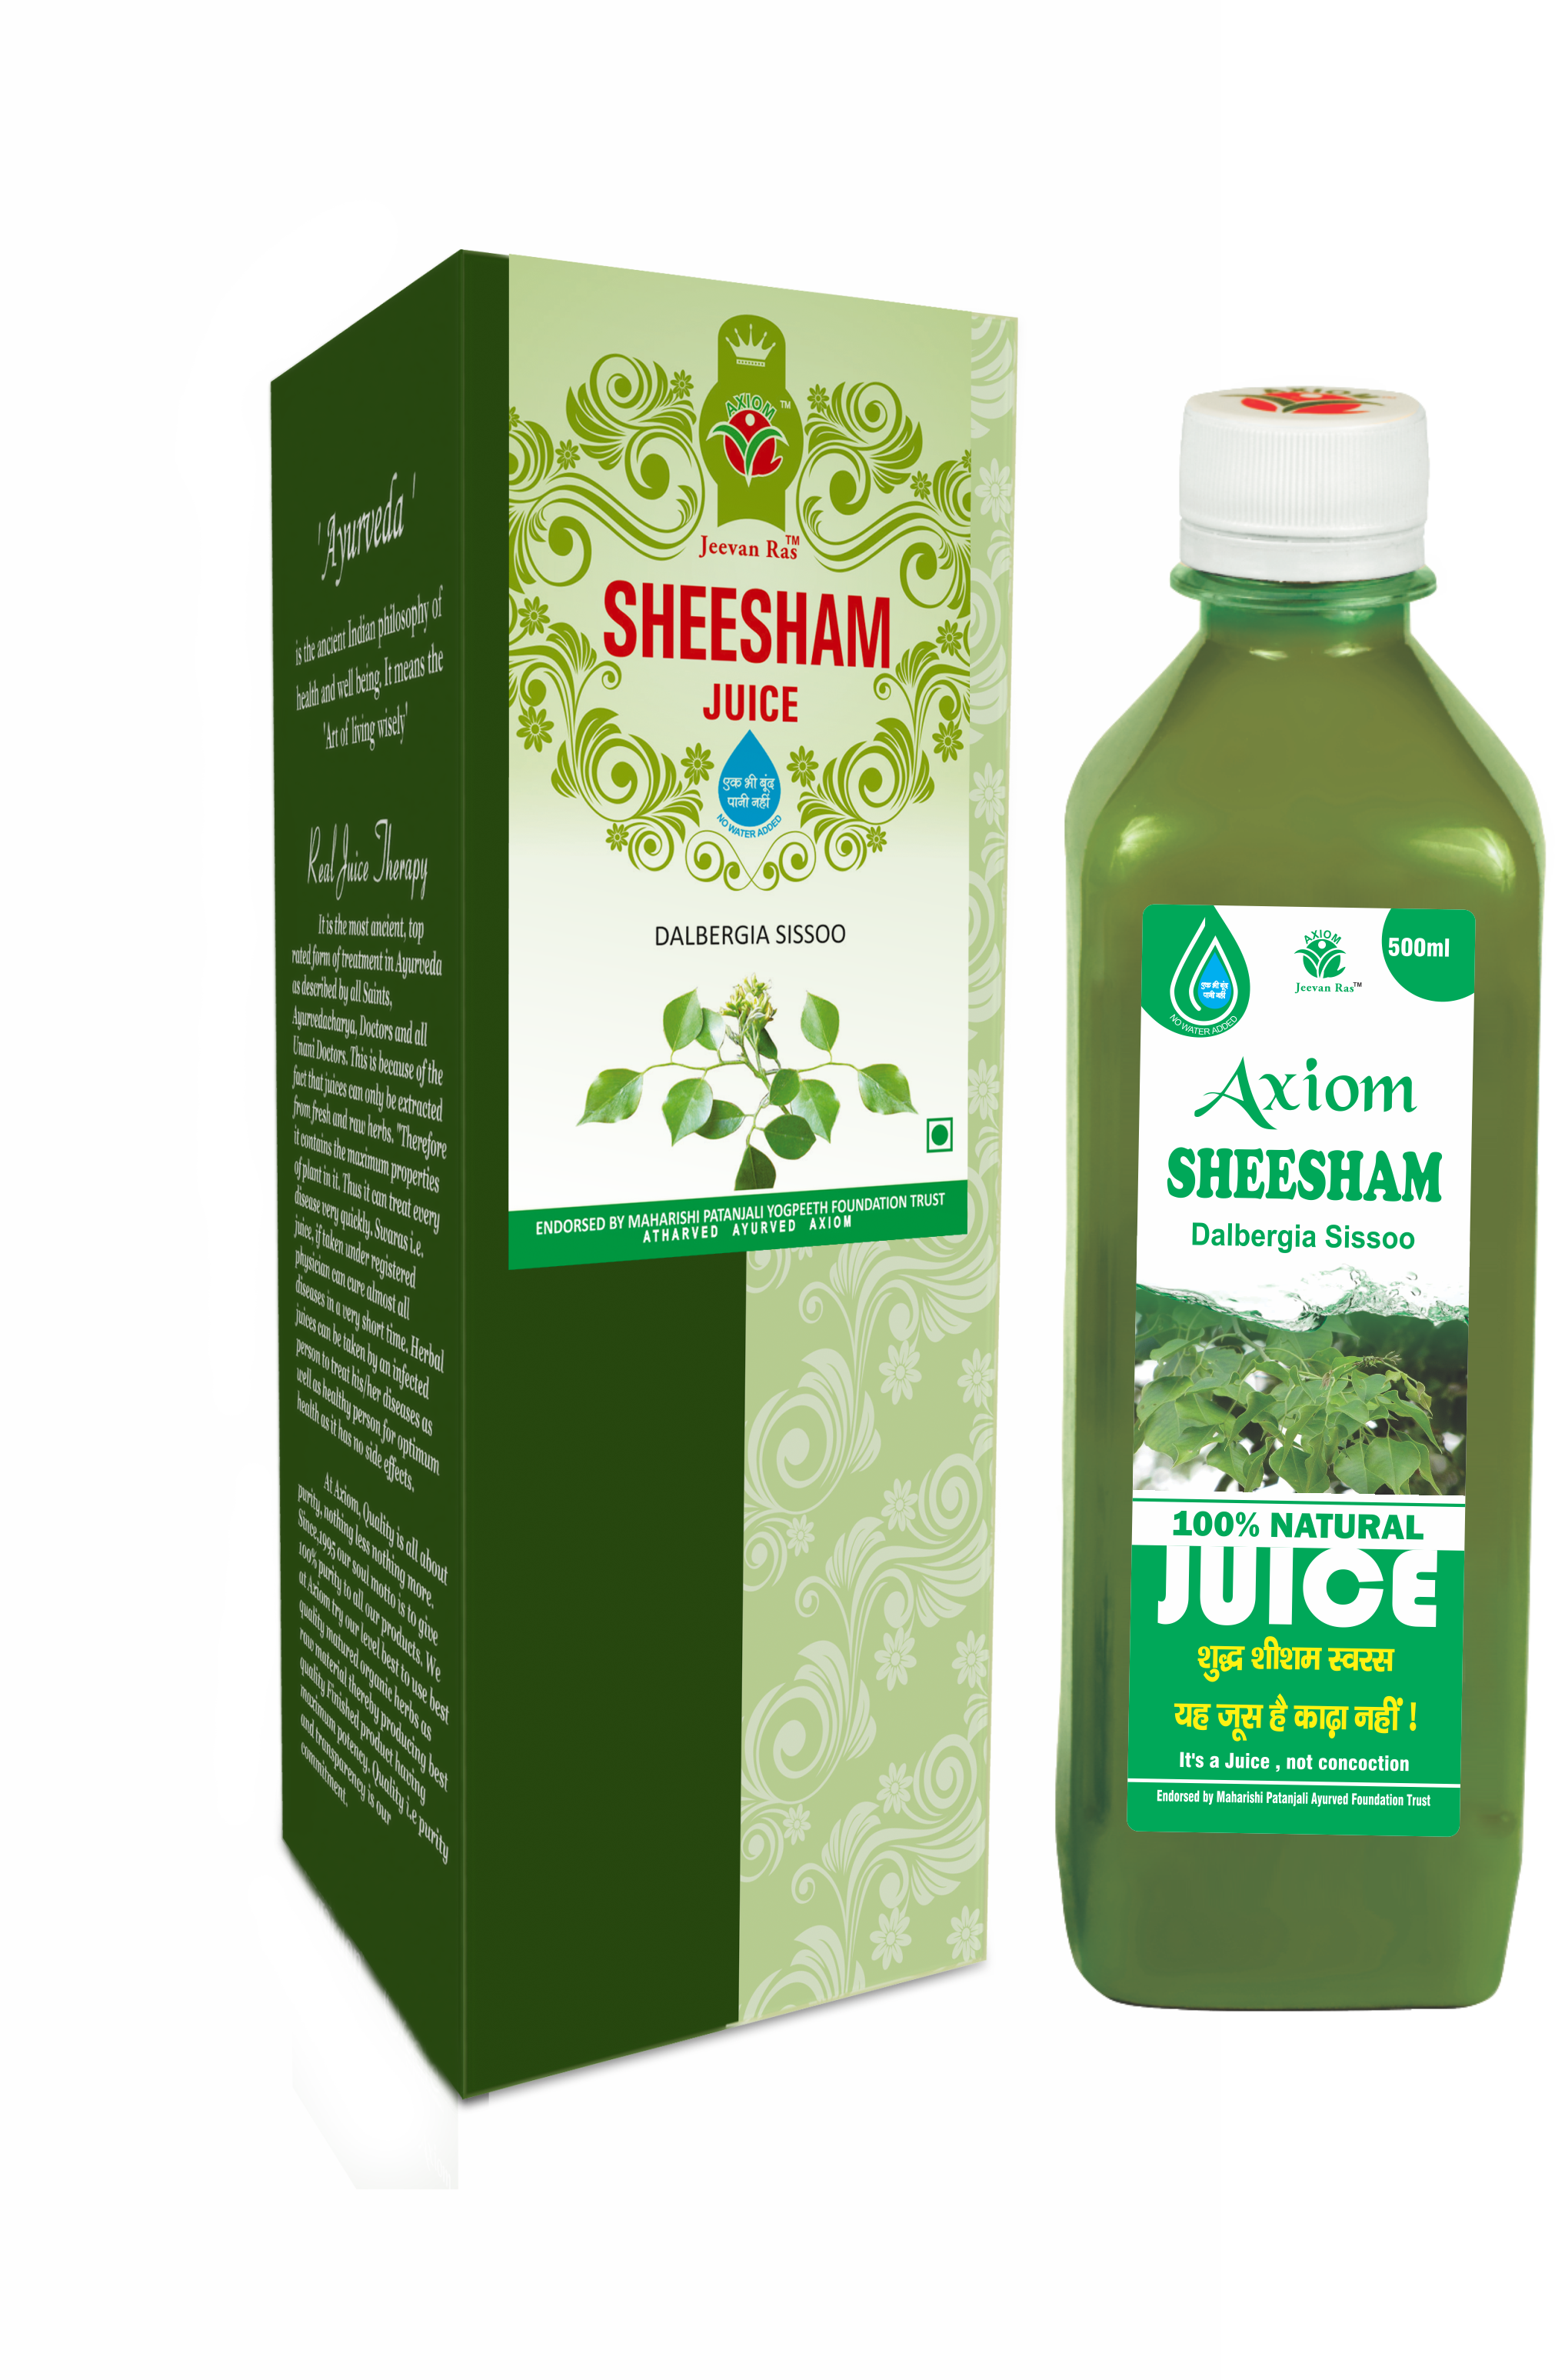 Buy Axiom Sheesham Juice at Best Price Online